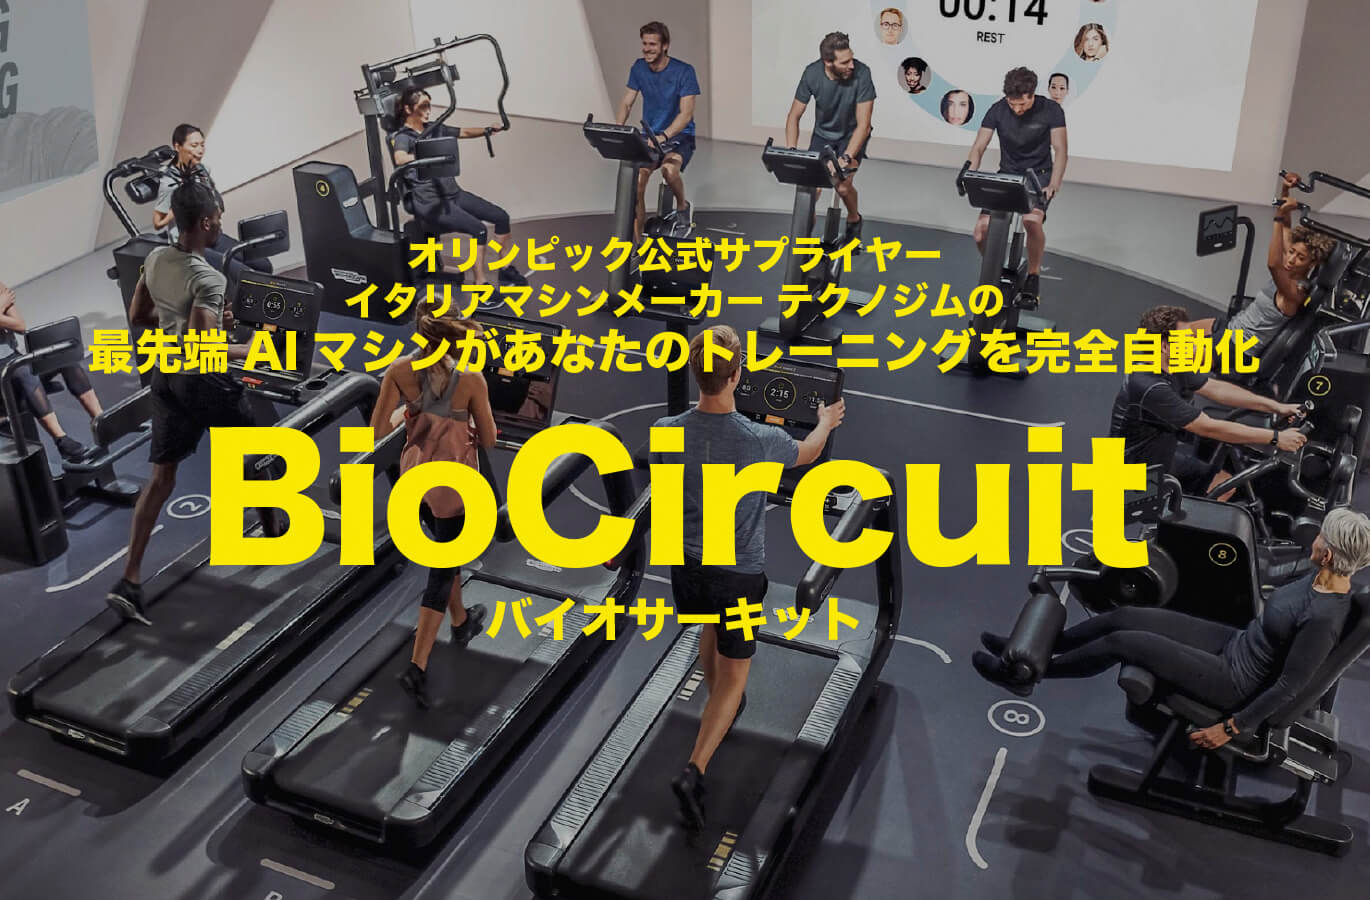 オリンピック公式サプライヤー
    イタリアマシンメーカー テクノジムの
    最先端AIマシンがあなたのトレーニングを完全自動化
    BioCircuitバイオサーキット